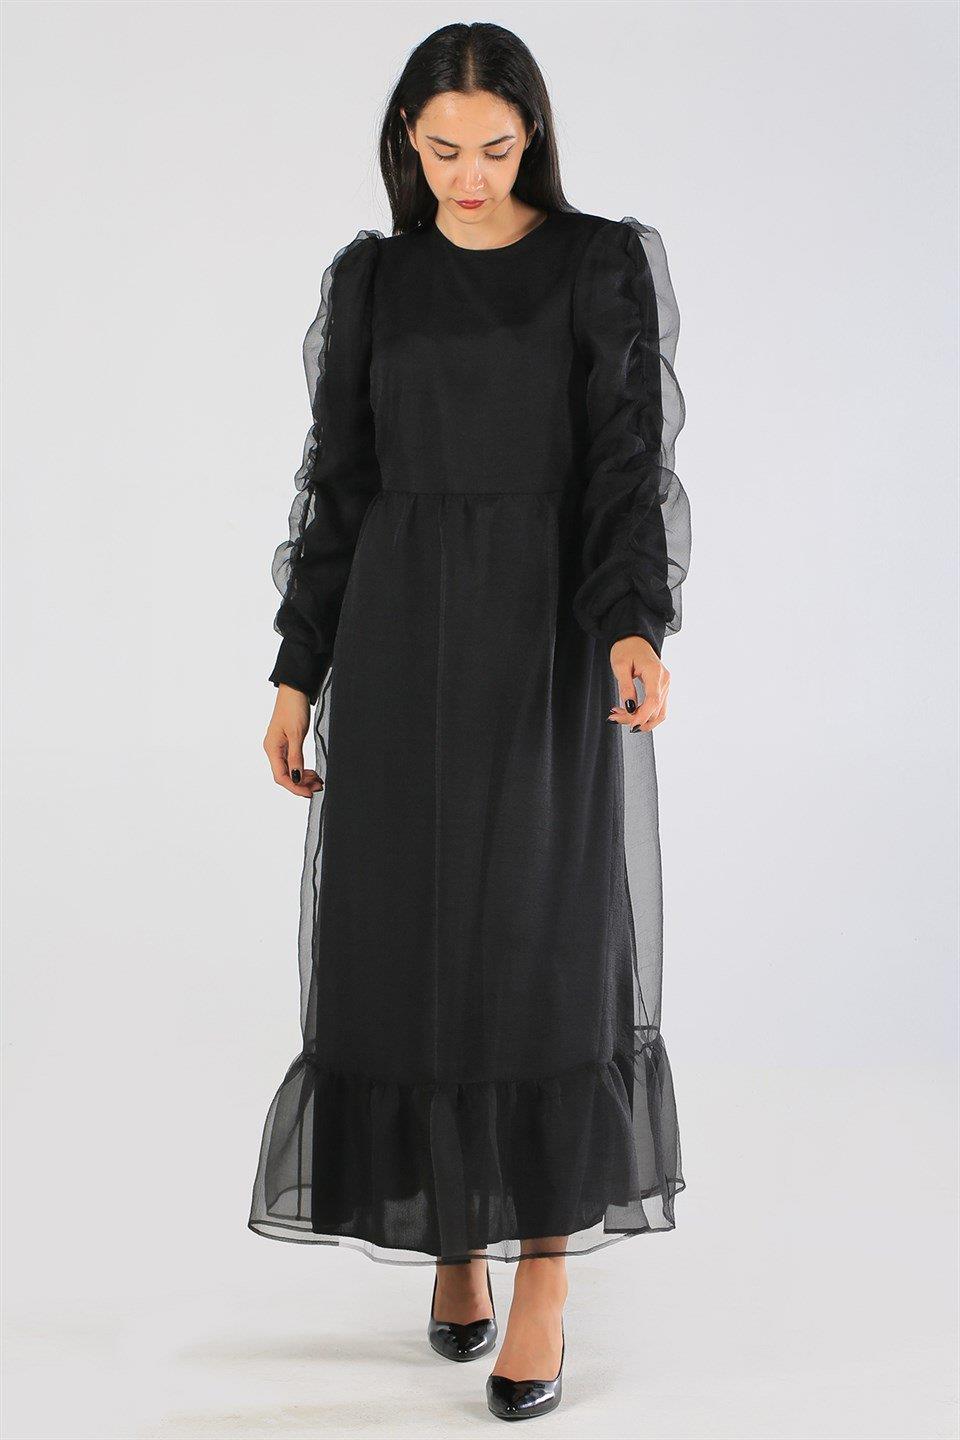 Organze Siyah Abiye Elbise (EX70570)